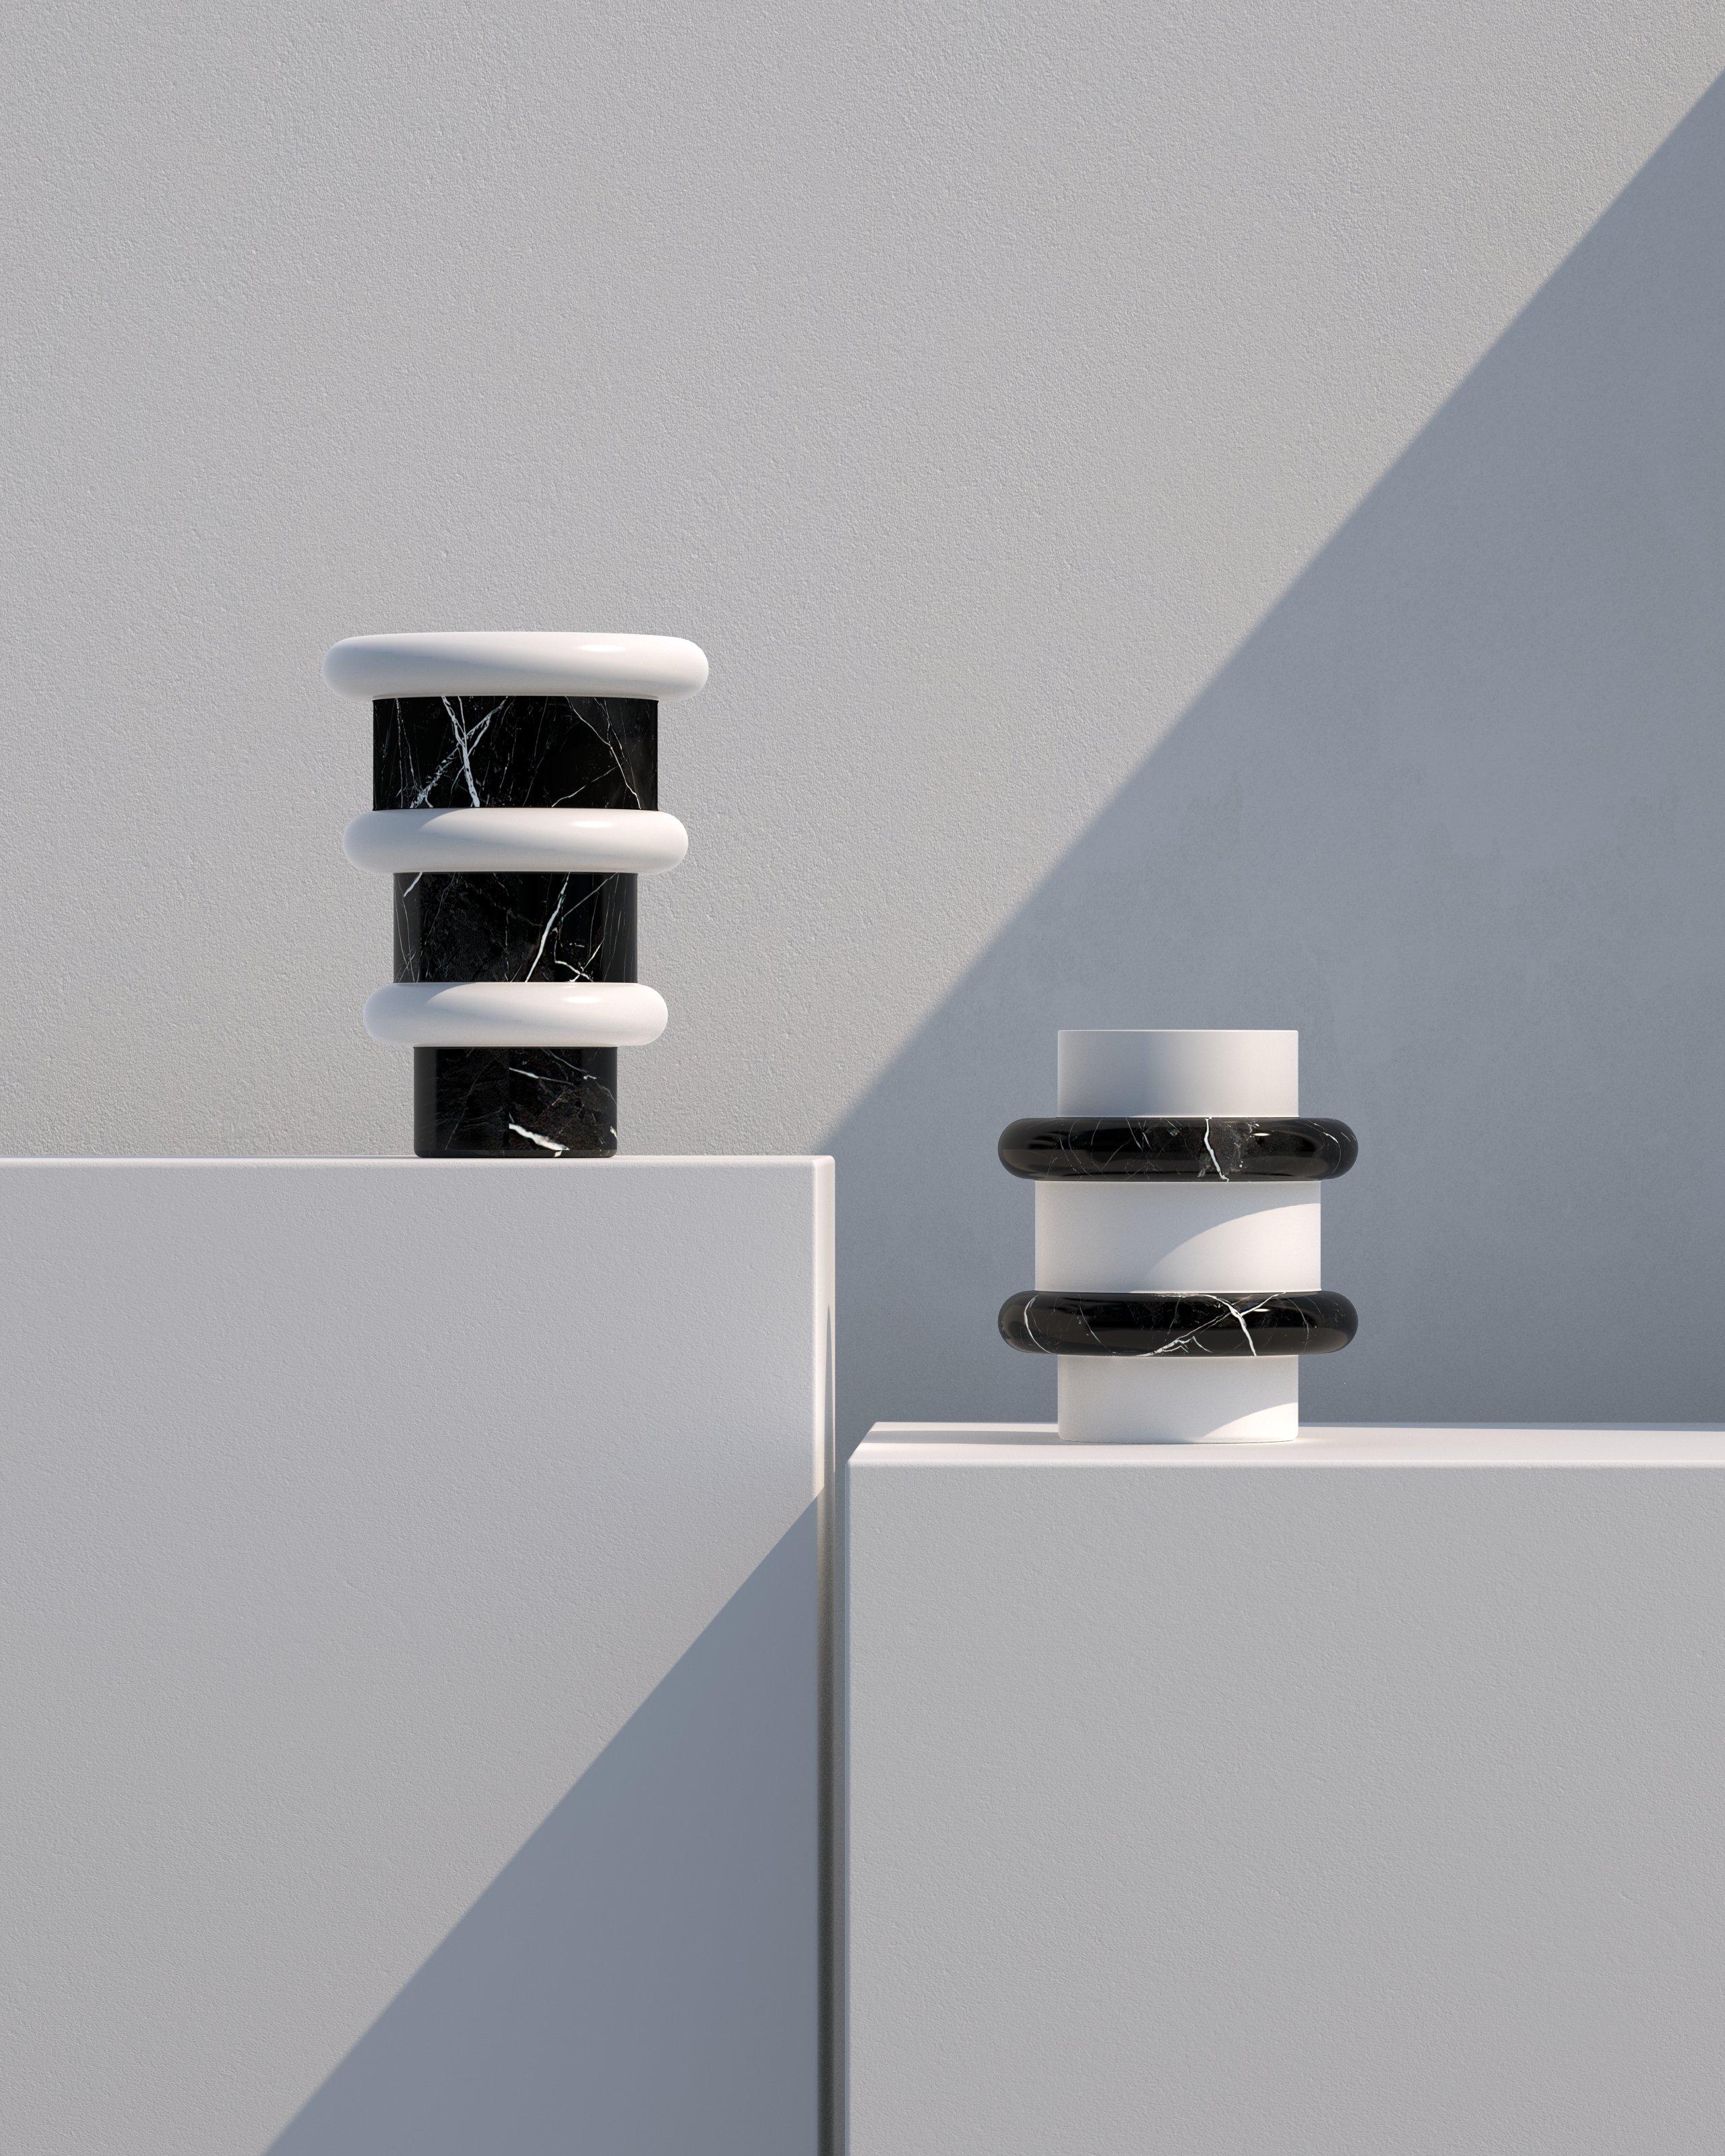 Ce vase minimaliste et ludique dans une combinaison audacieuse de marbre noir et blanc est un article parfait pour ajouter un accent authentique à tout espace intérieur. Fabriqués en Italie à partir de marbre naturel, les vases Lumière offrent des